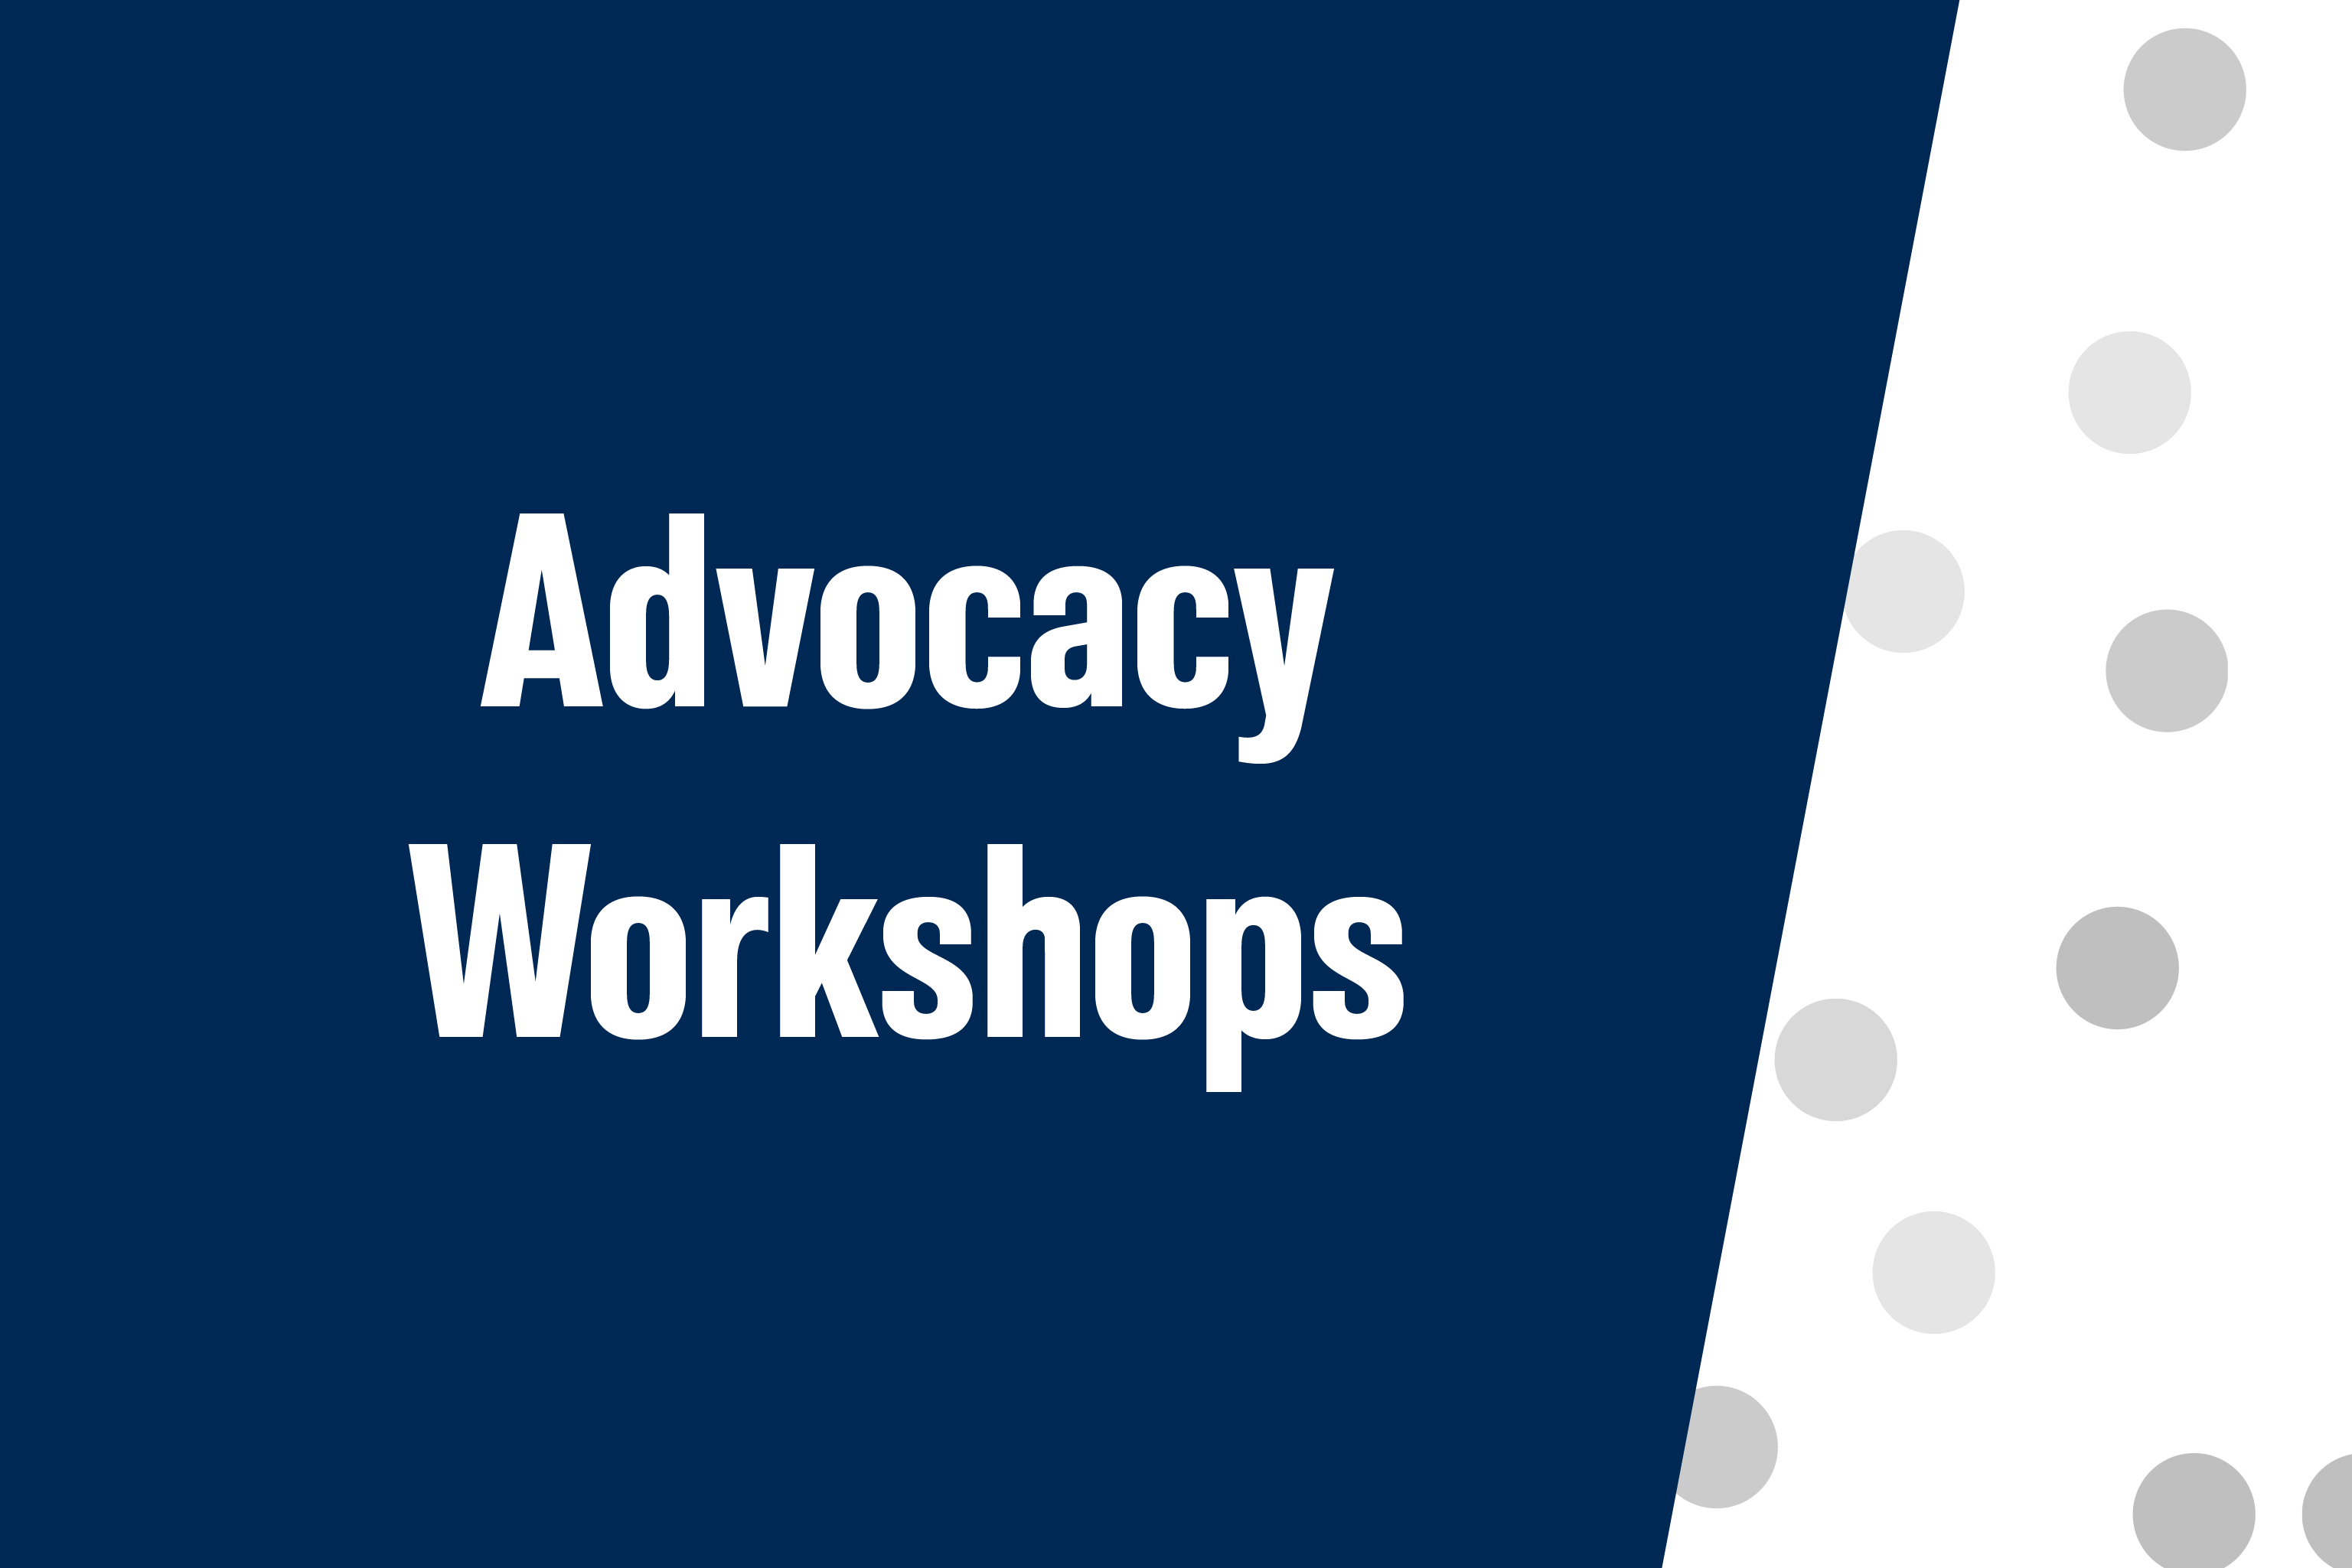 Advocacy workshops.